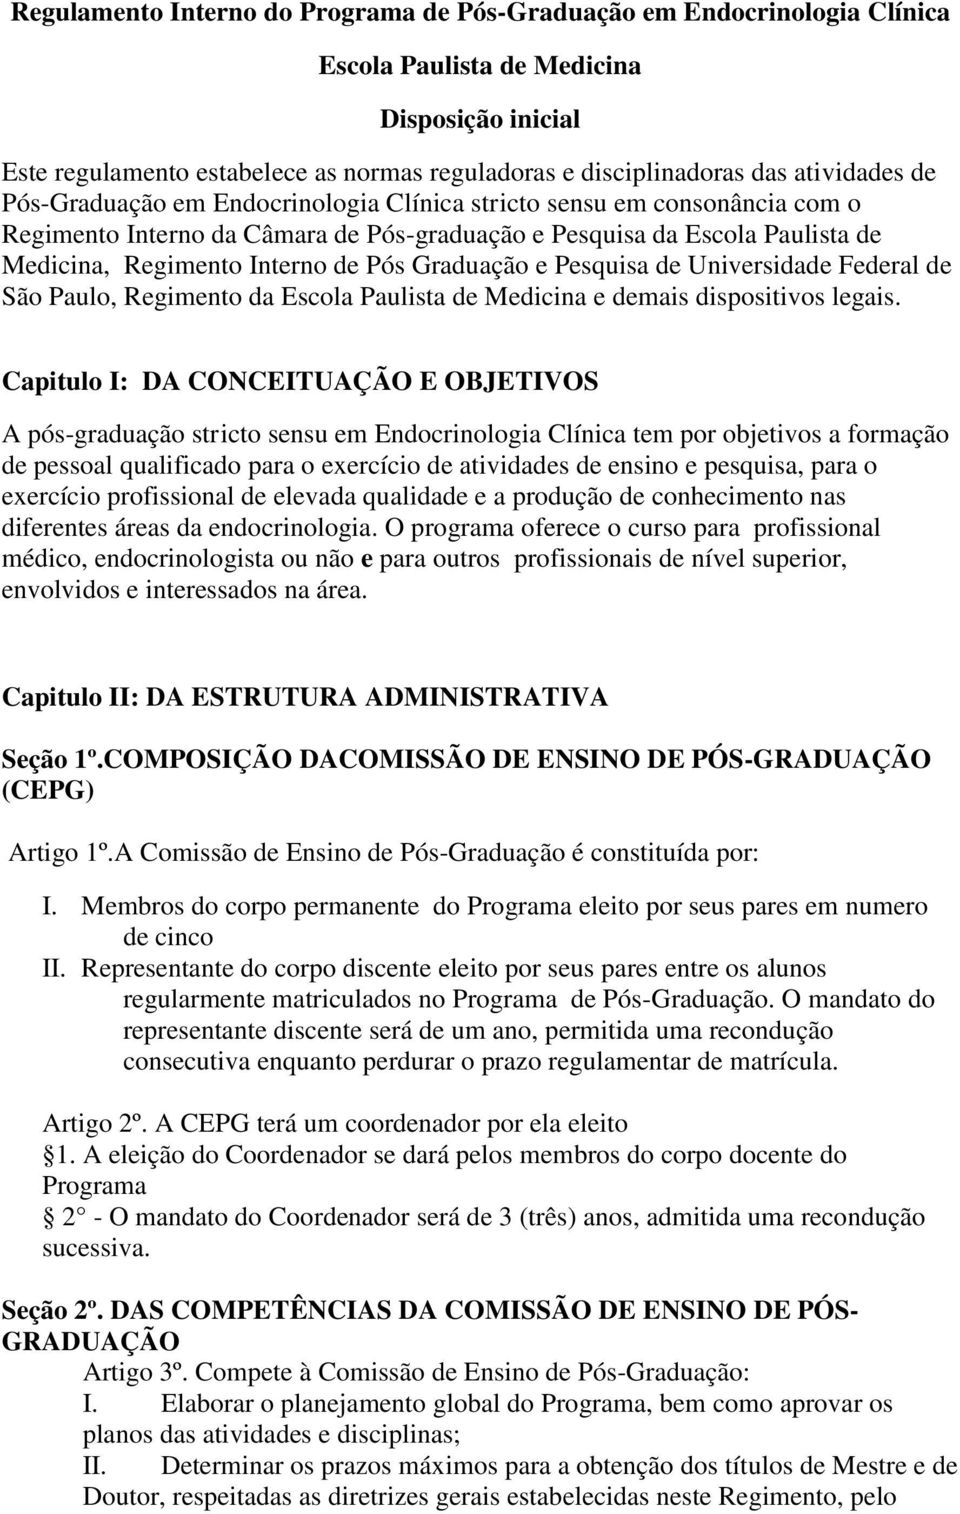 Pós Graduação e Pesquisa de Universidade Federal de São Paulo, Regimento da Escola Paulista de Medicina e demais dispositivos legais.